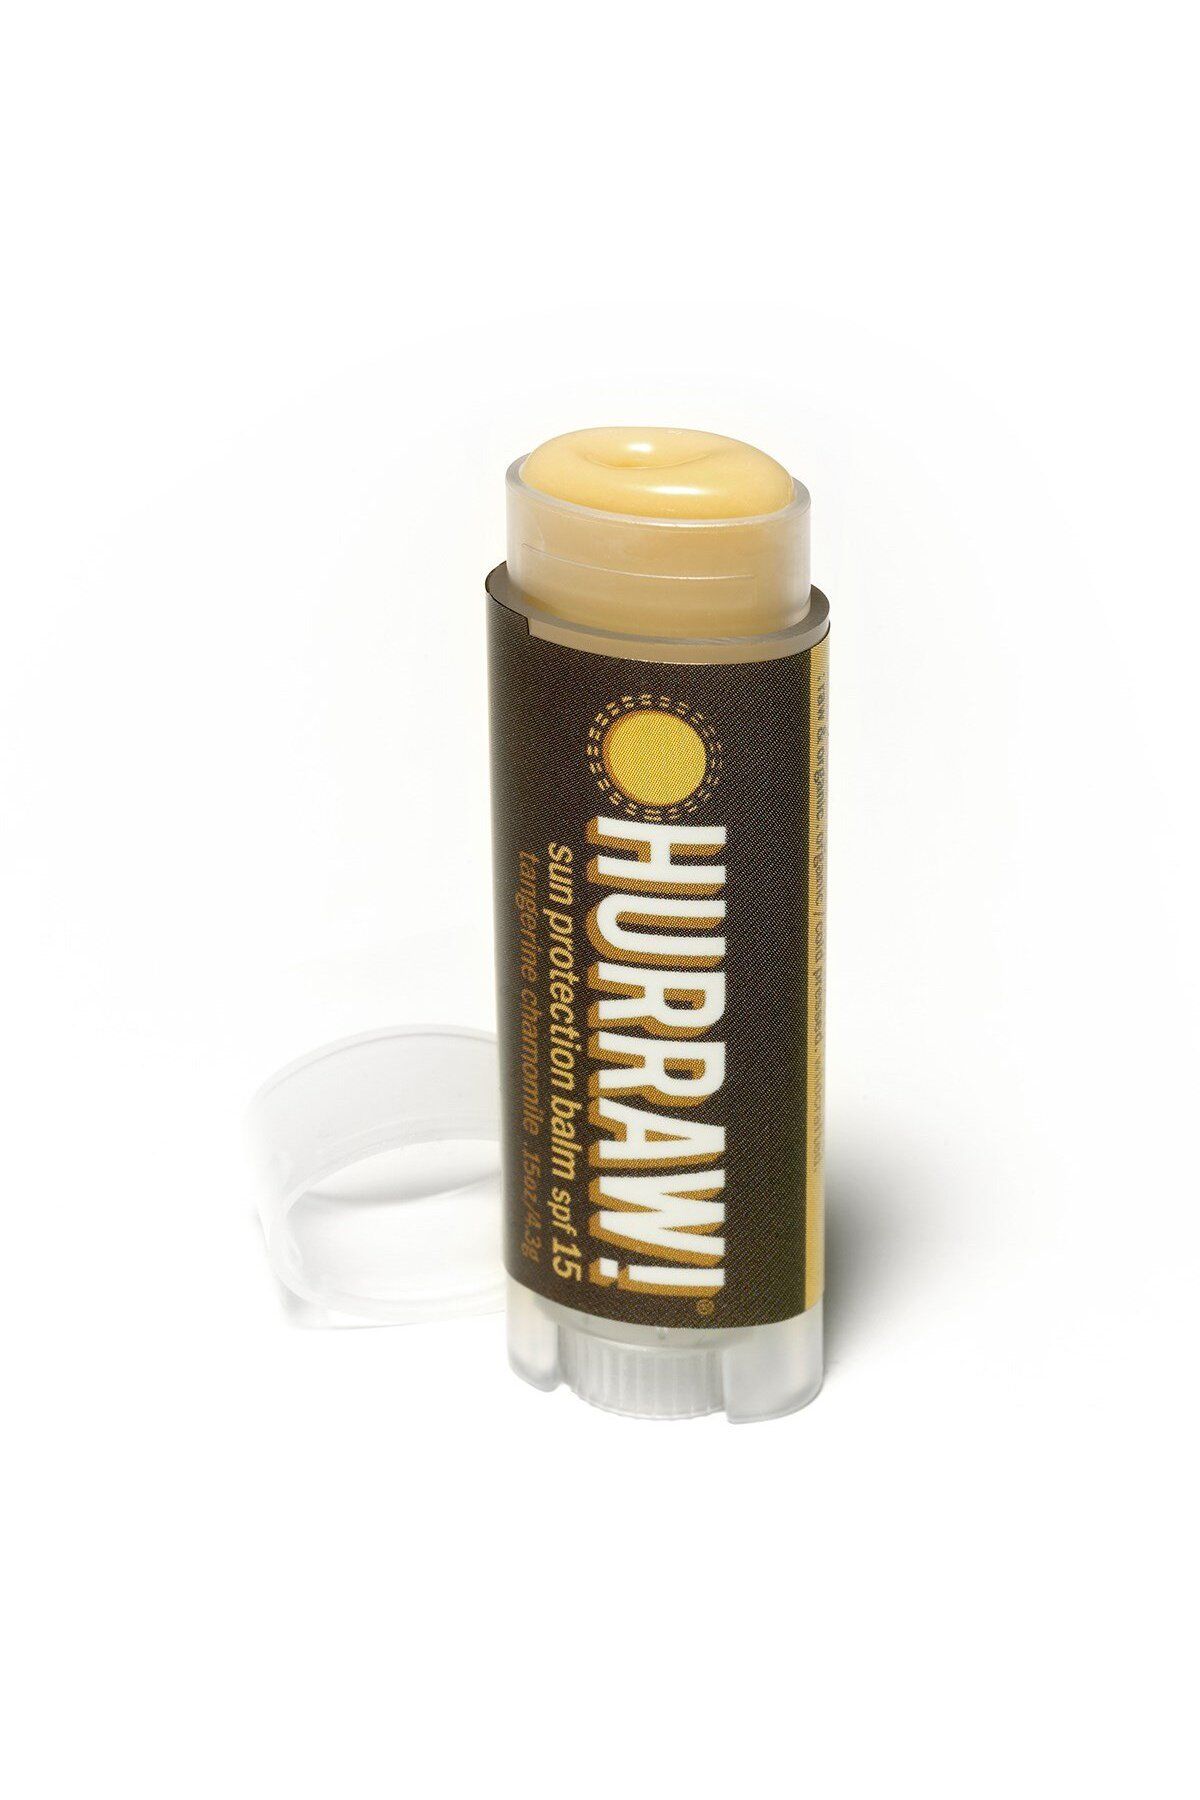 Hurraw Organik Sun Protection Dudak Balmı Spf 15